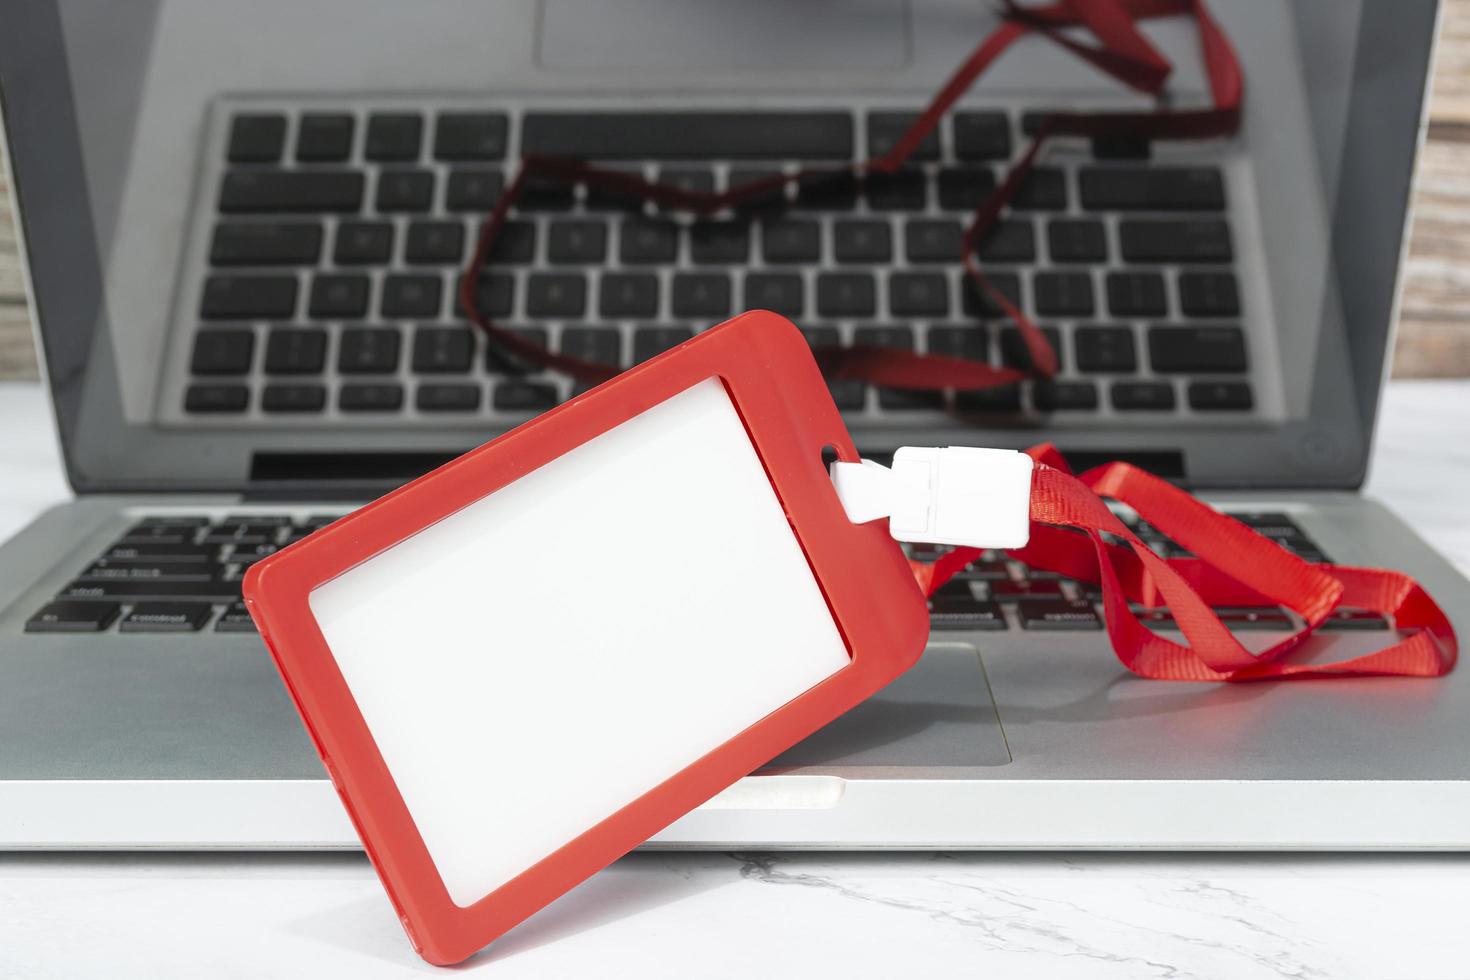 crachá vermelho colocado em um laptop ou notebook. conceito de registro. foto